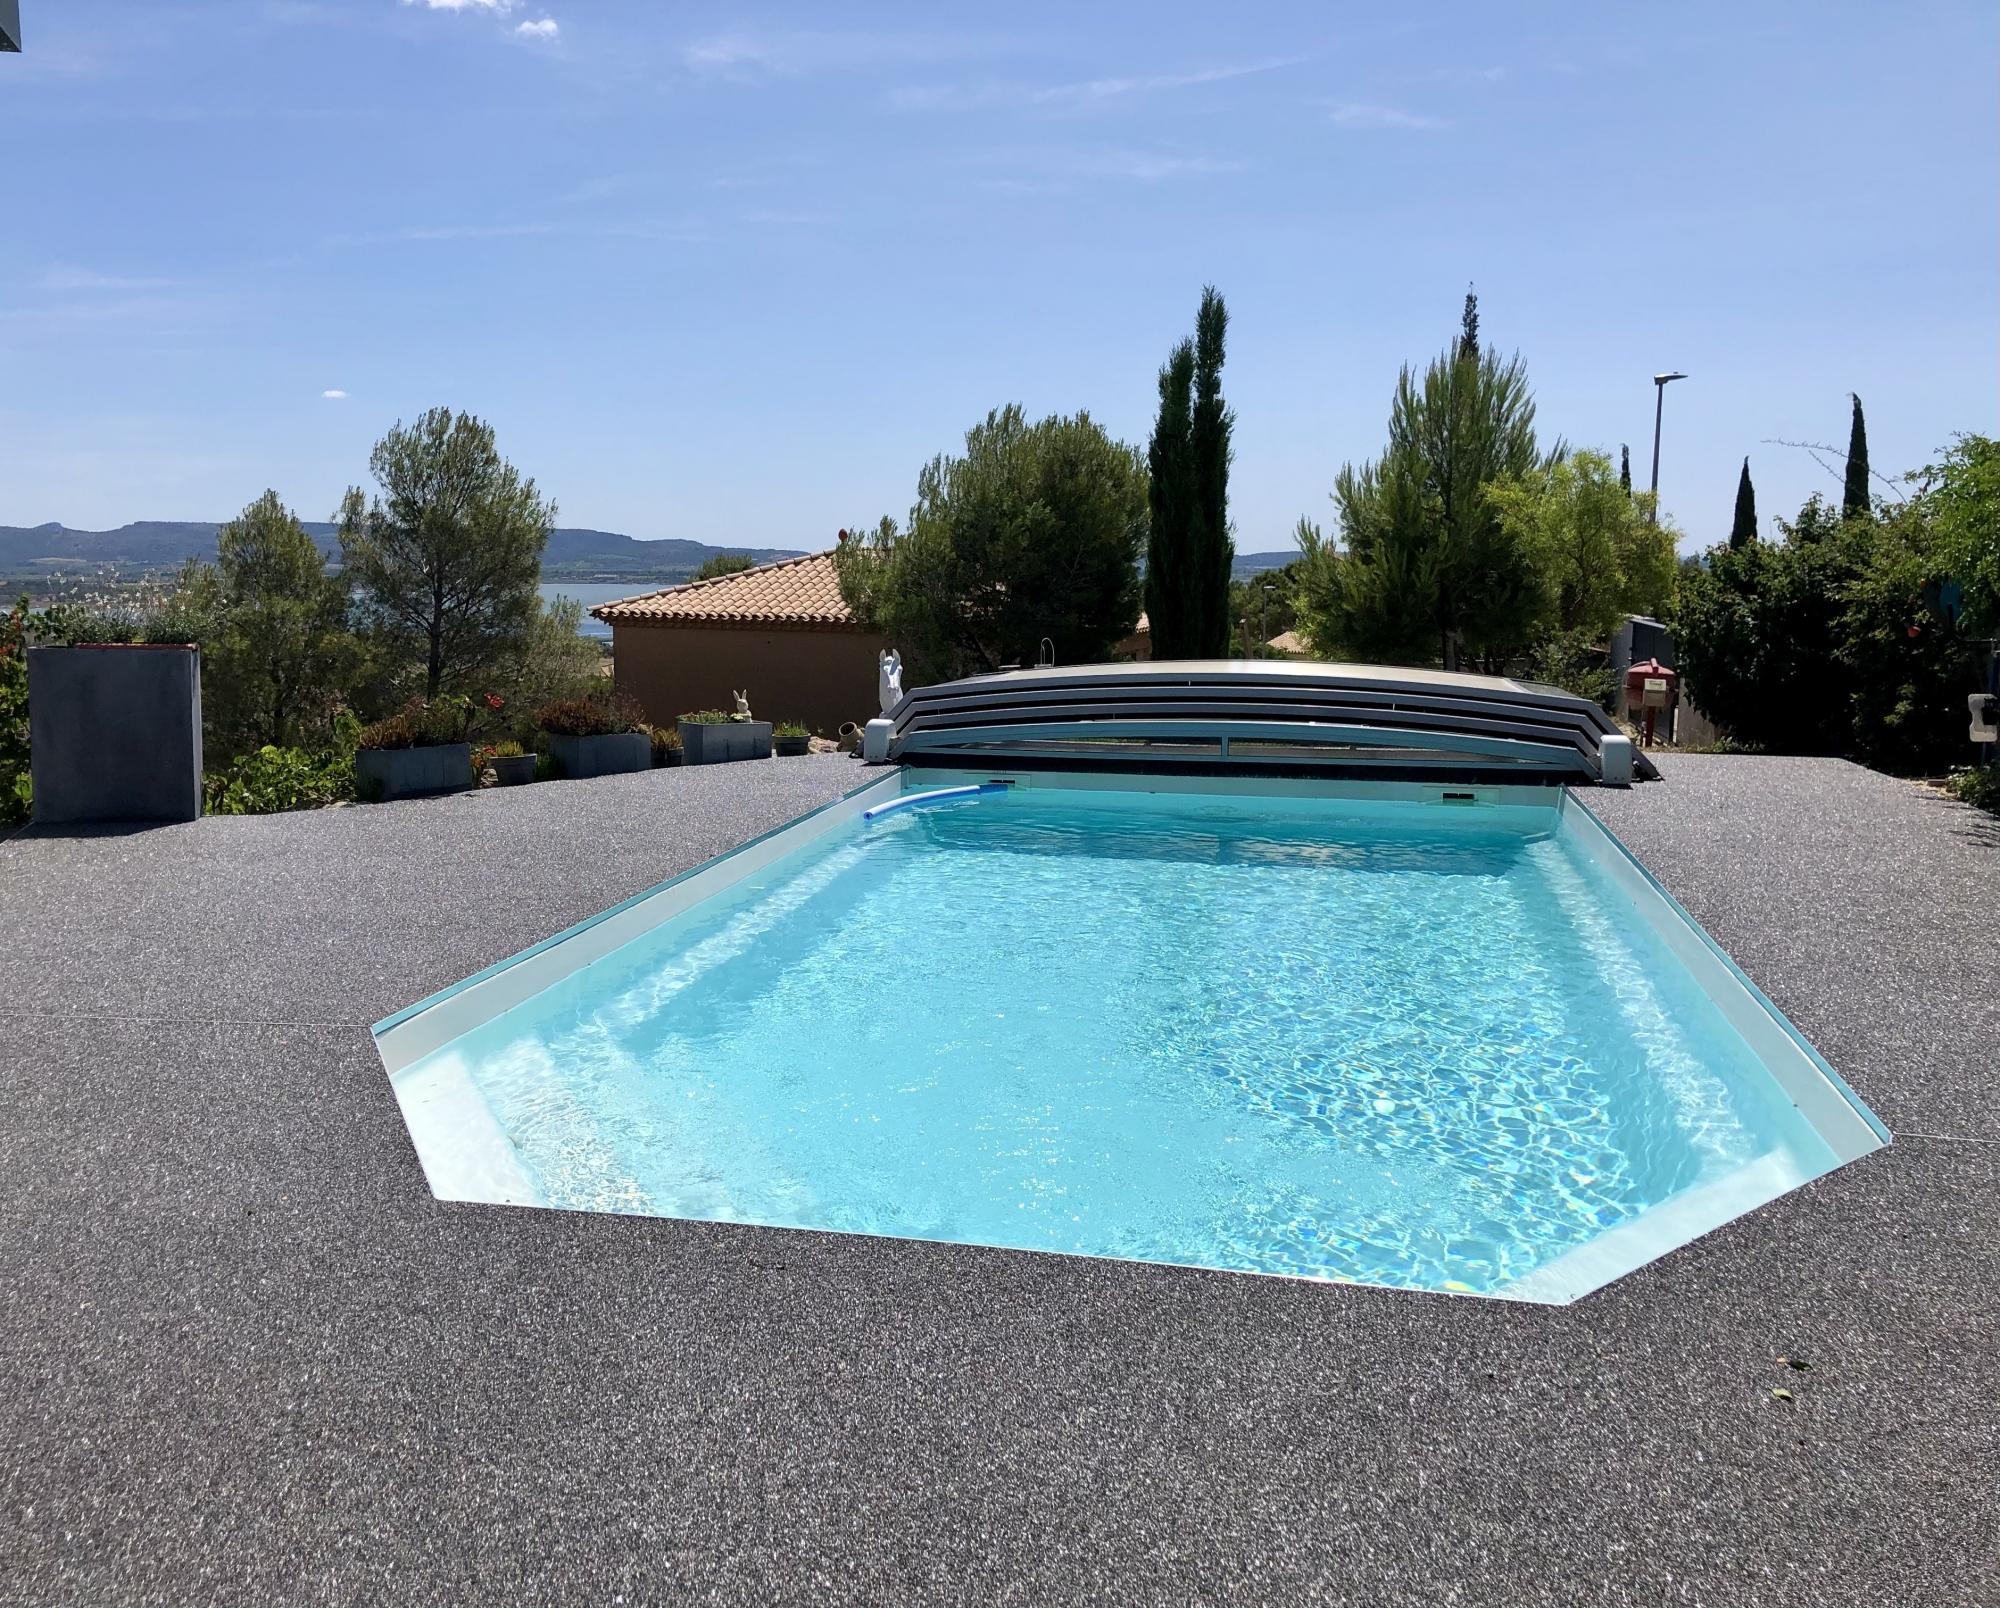 Cration Plage de piscine en Hydrostar  Narbonne ralise le 06/07/2021